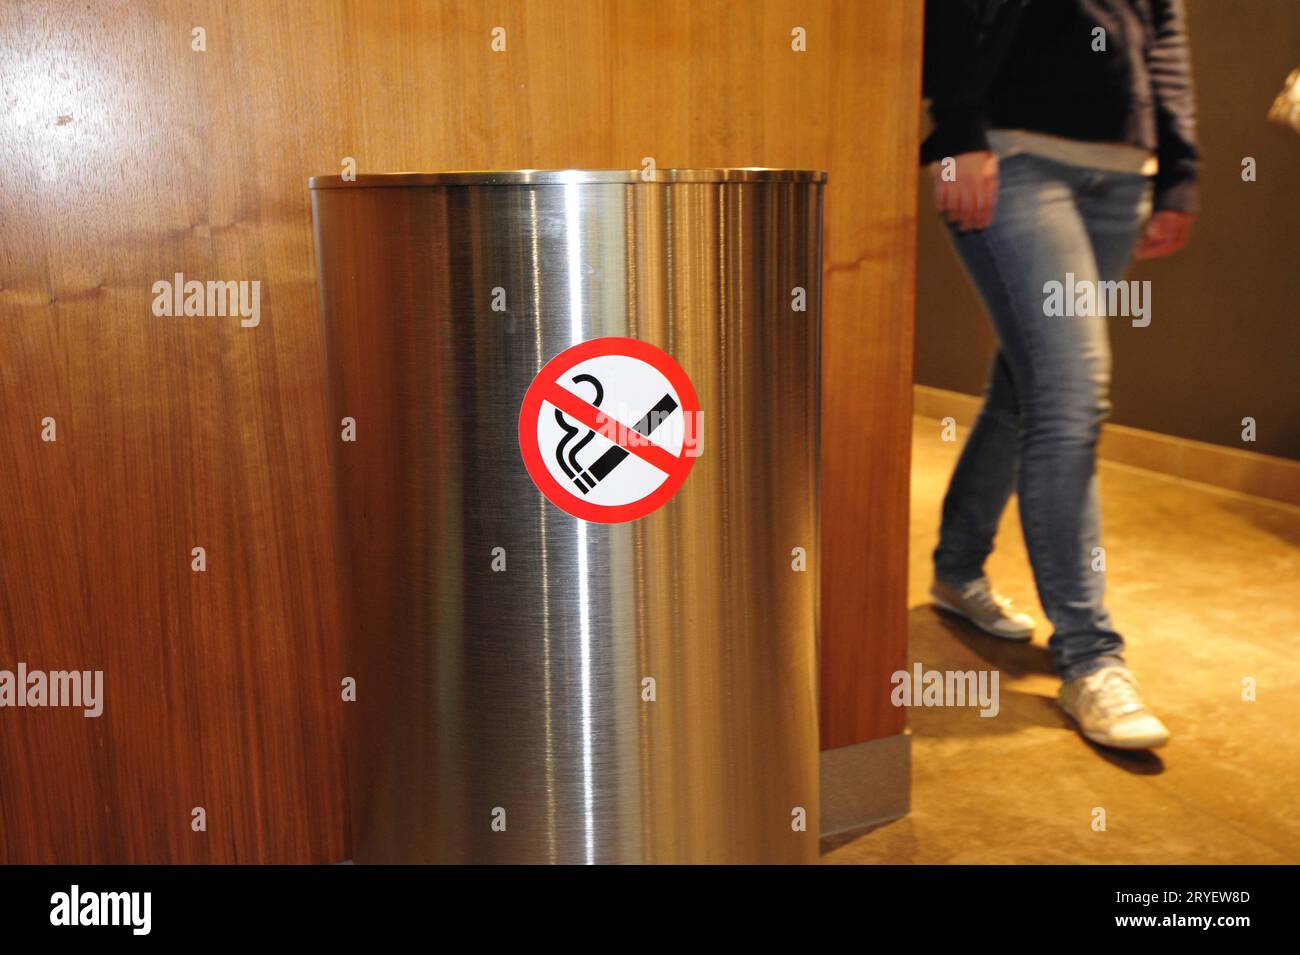 Smoking ban or smoking prohibited sign Stock Photo